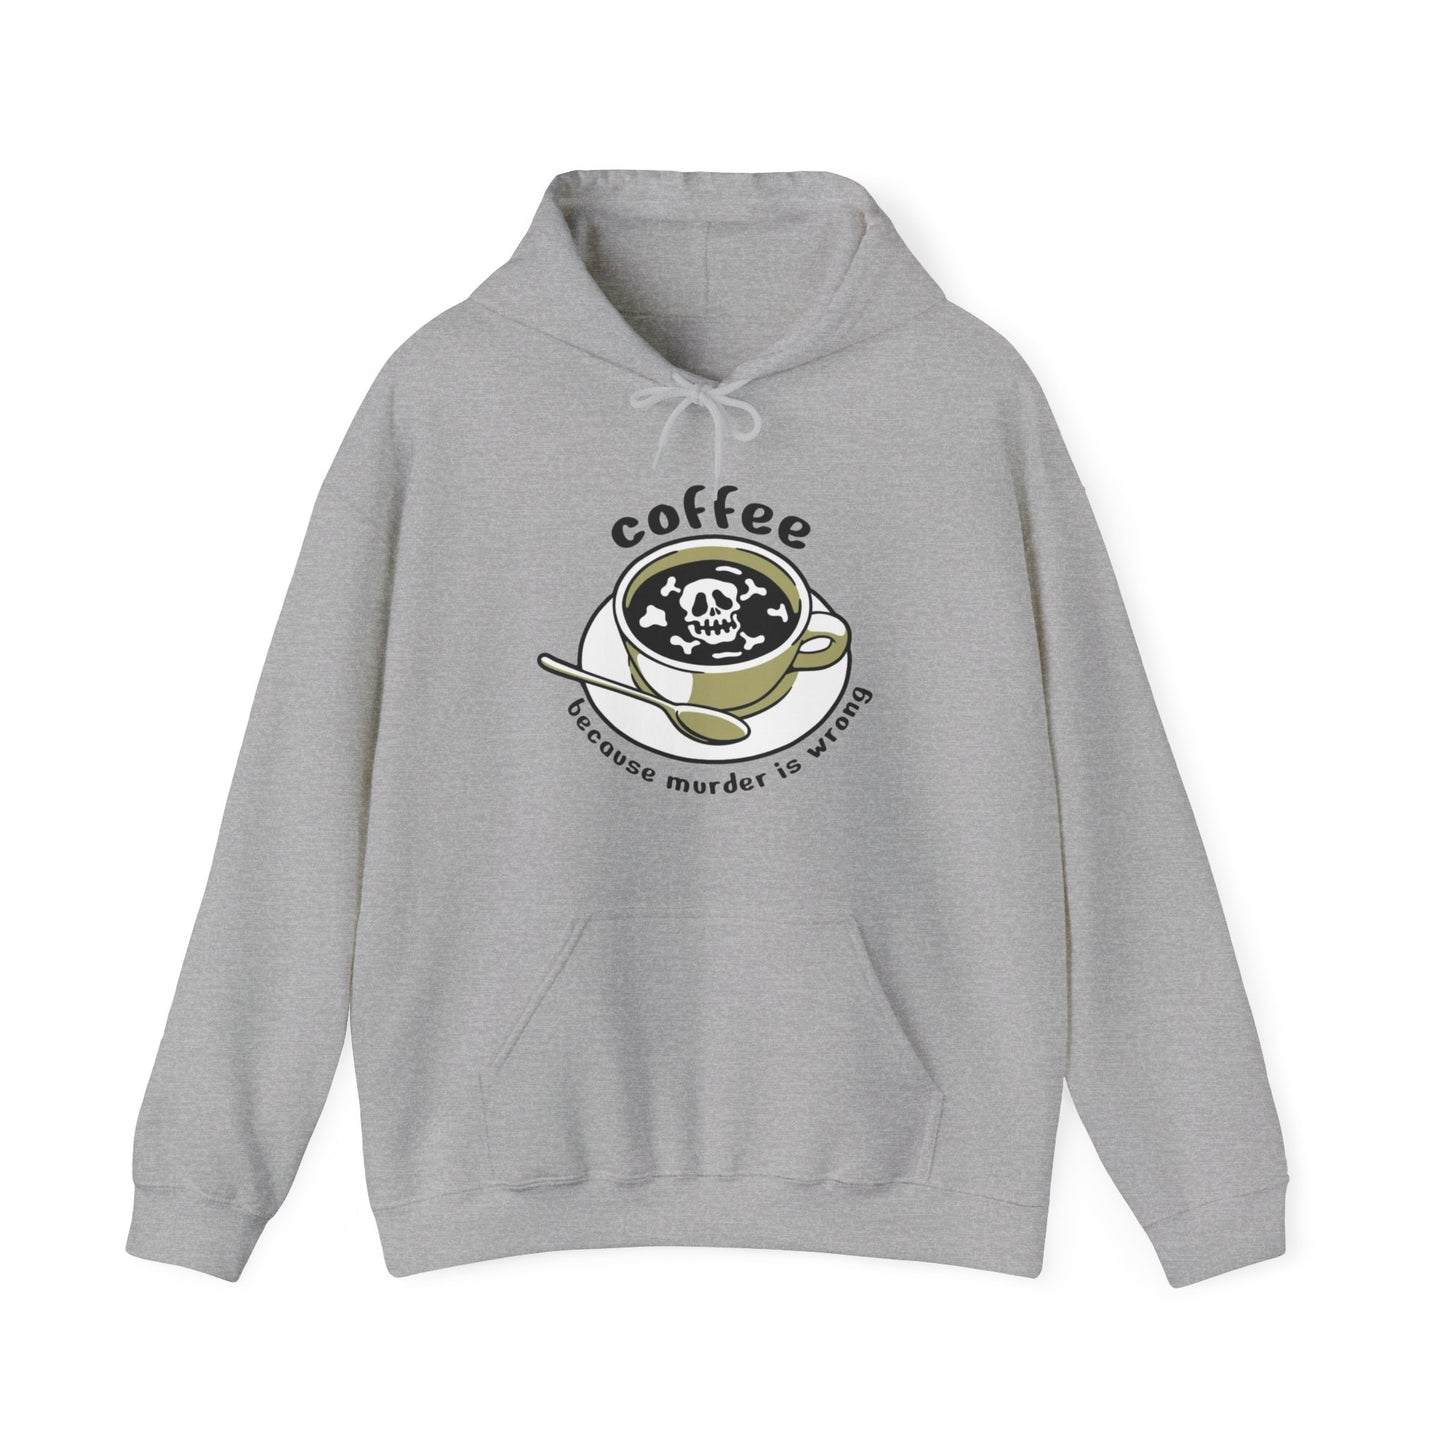 Coffee Because Murder is Wrong Sweatshirt